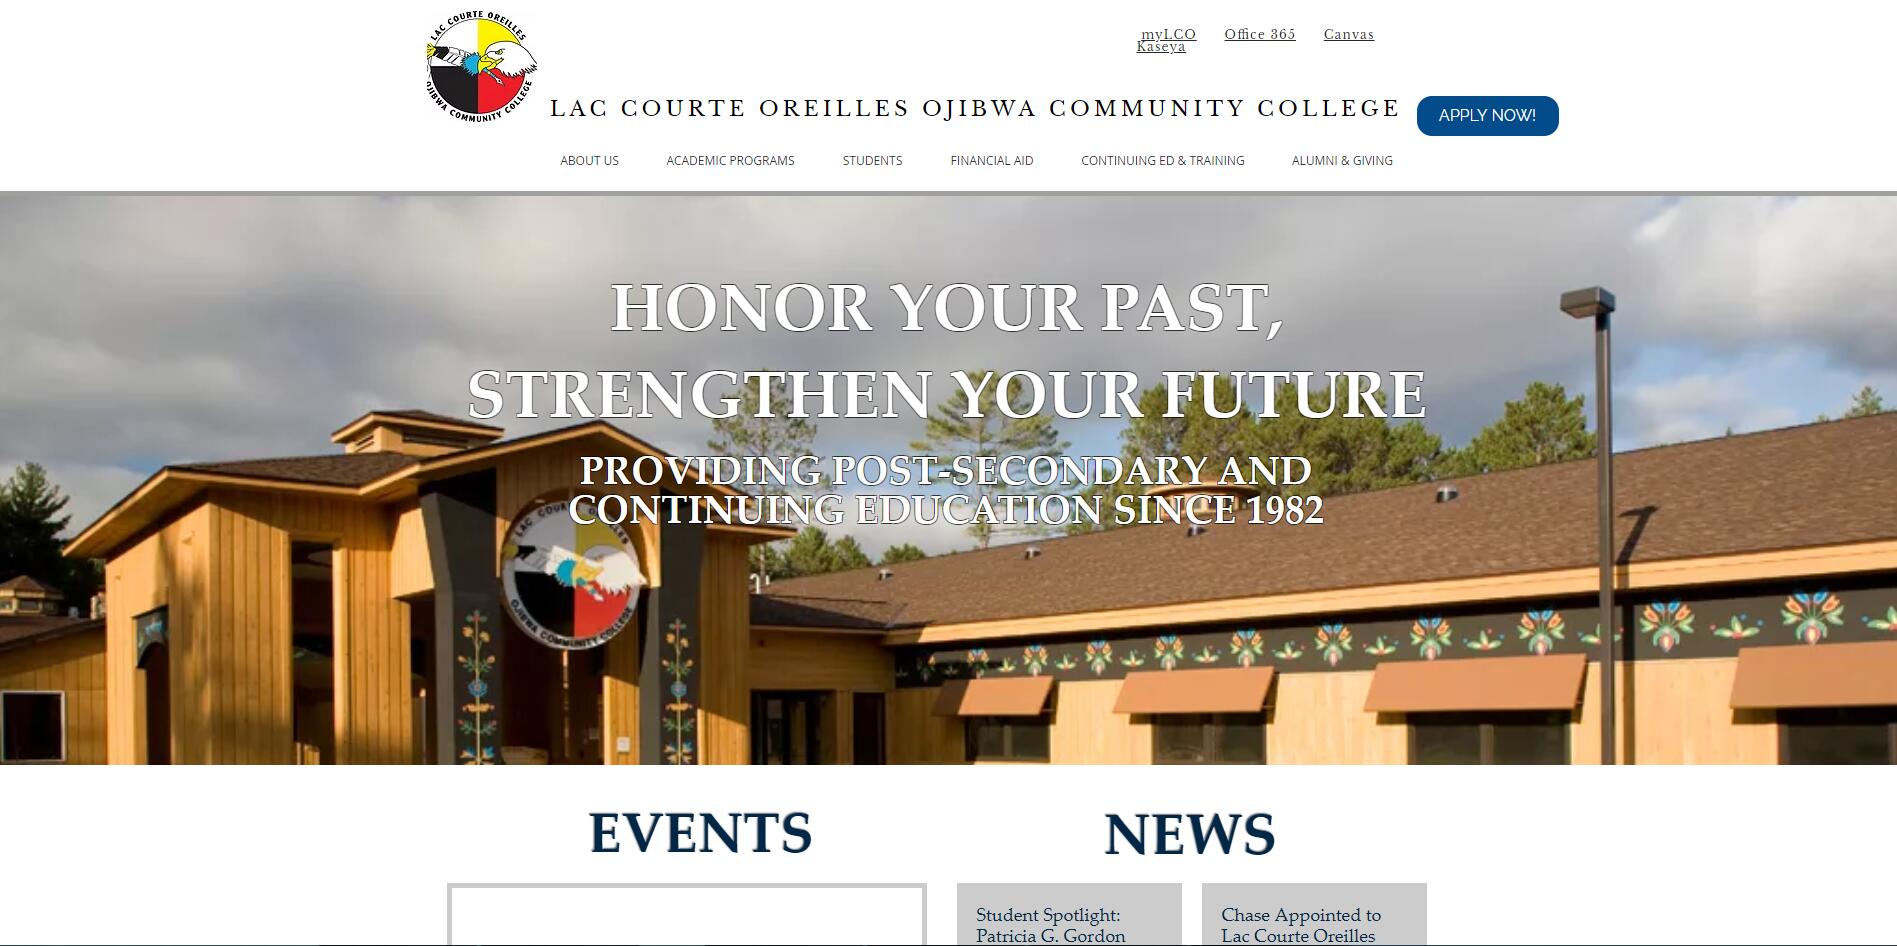 Lac Courte Oreilles Ojibwa Community College